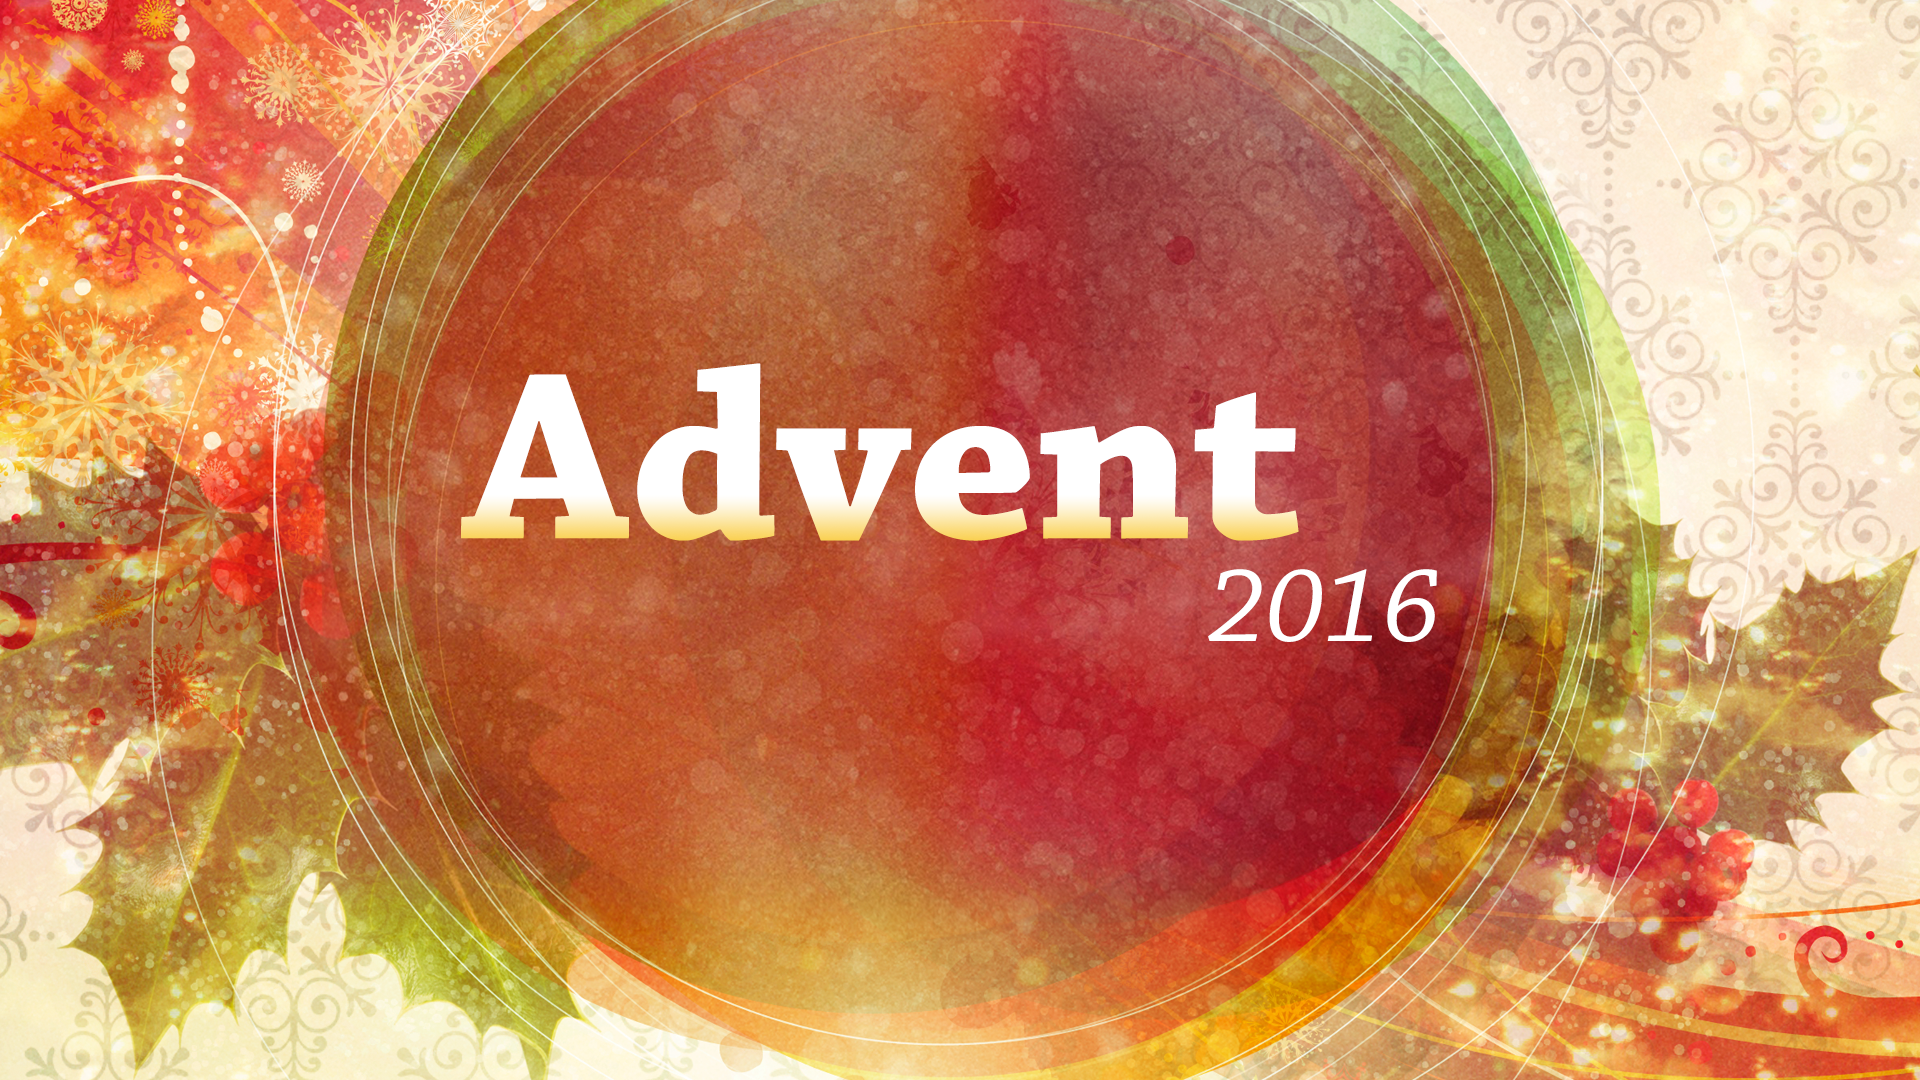 1. Advent 2016